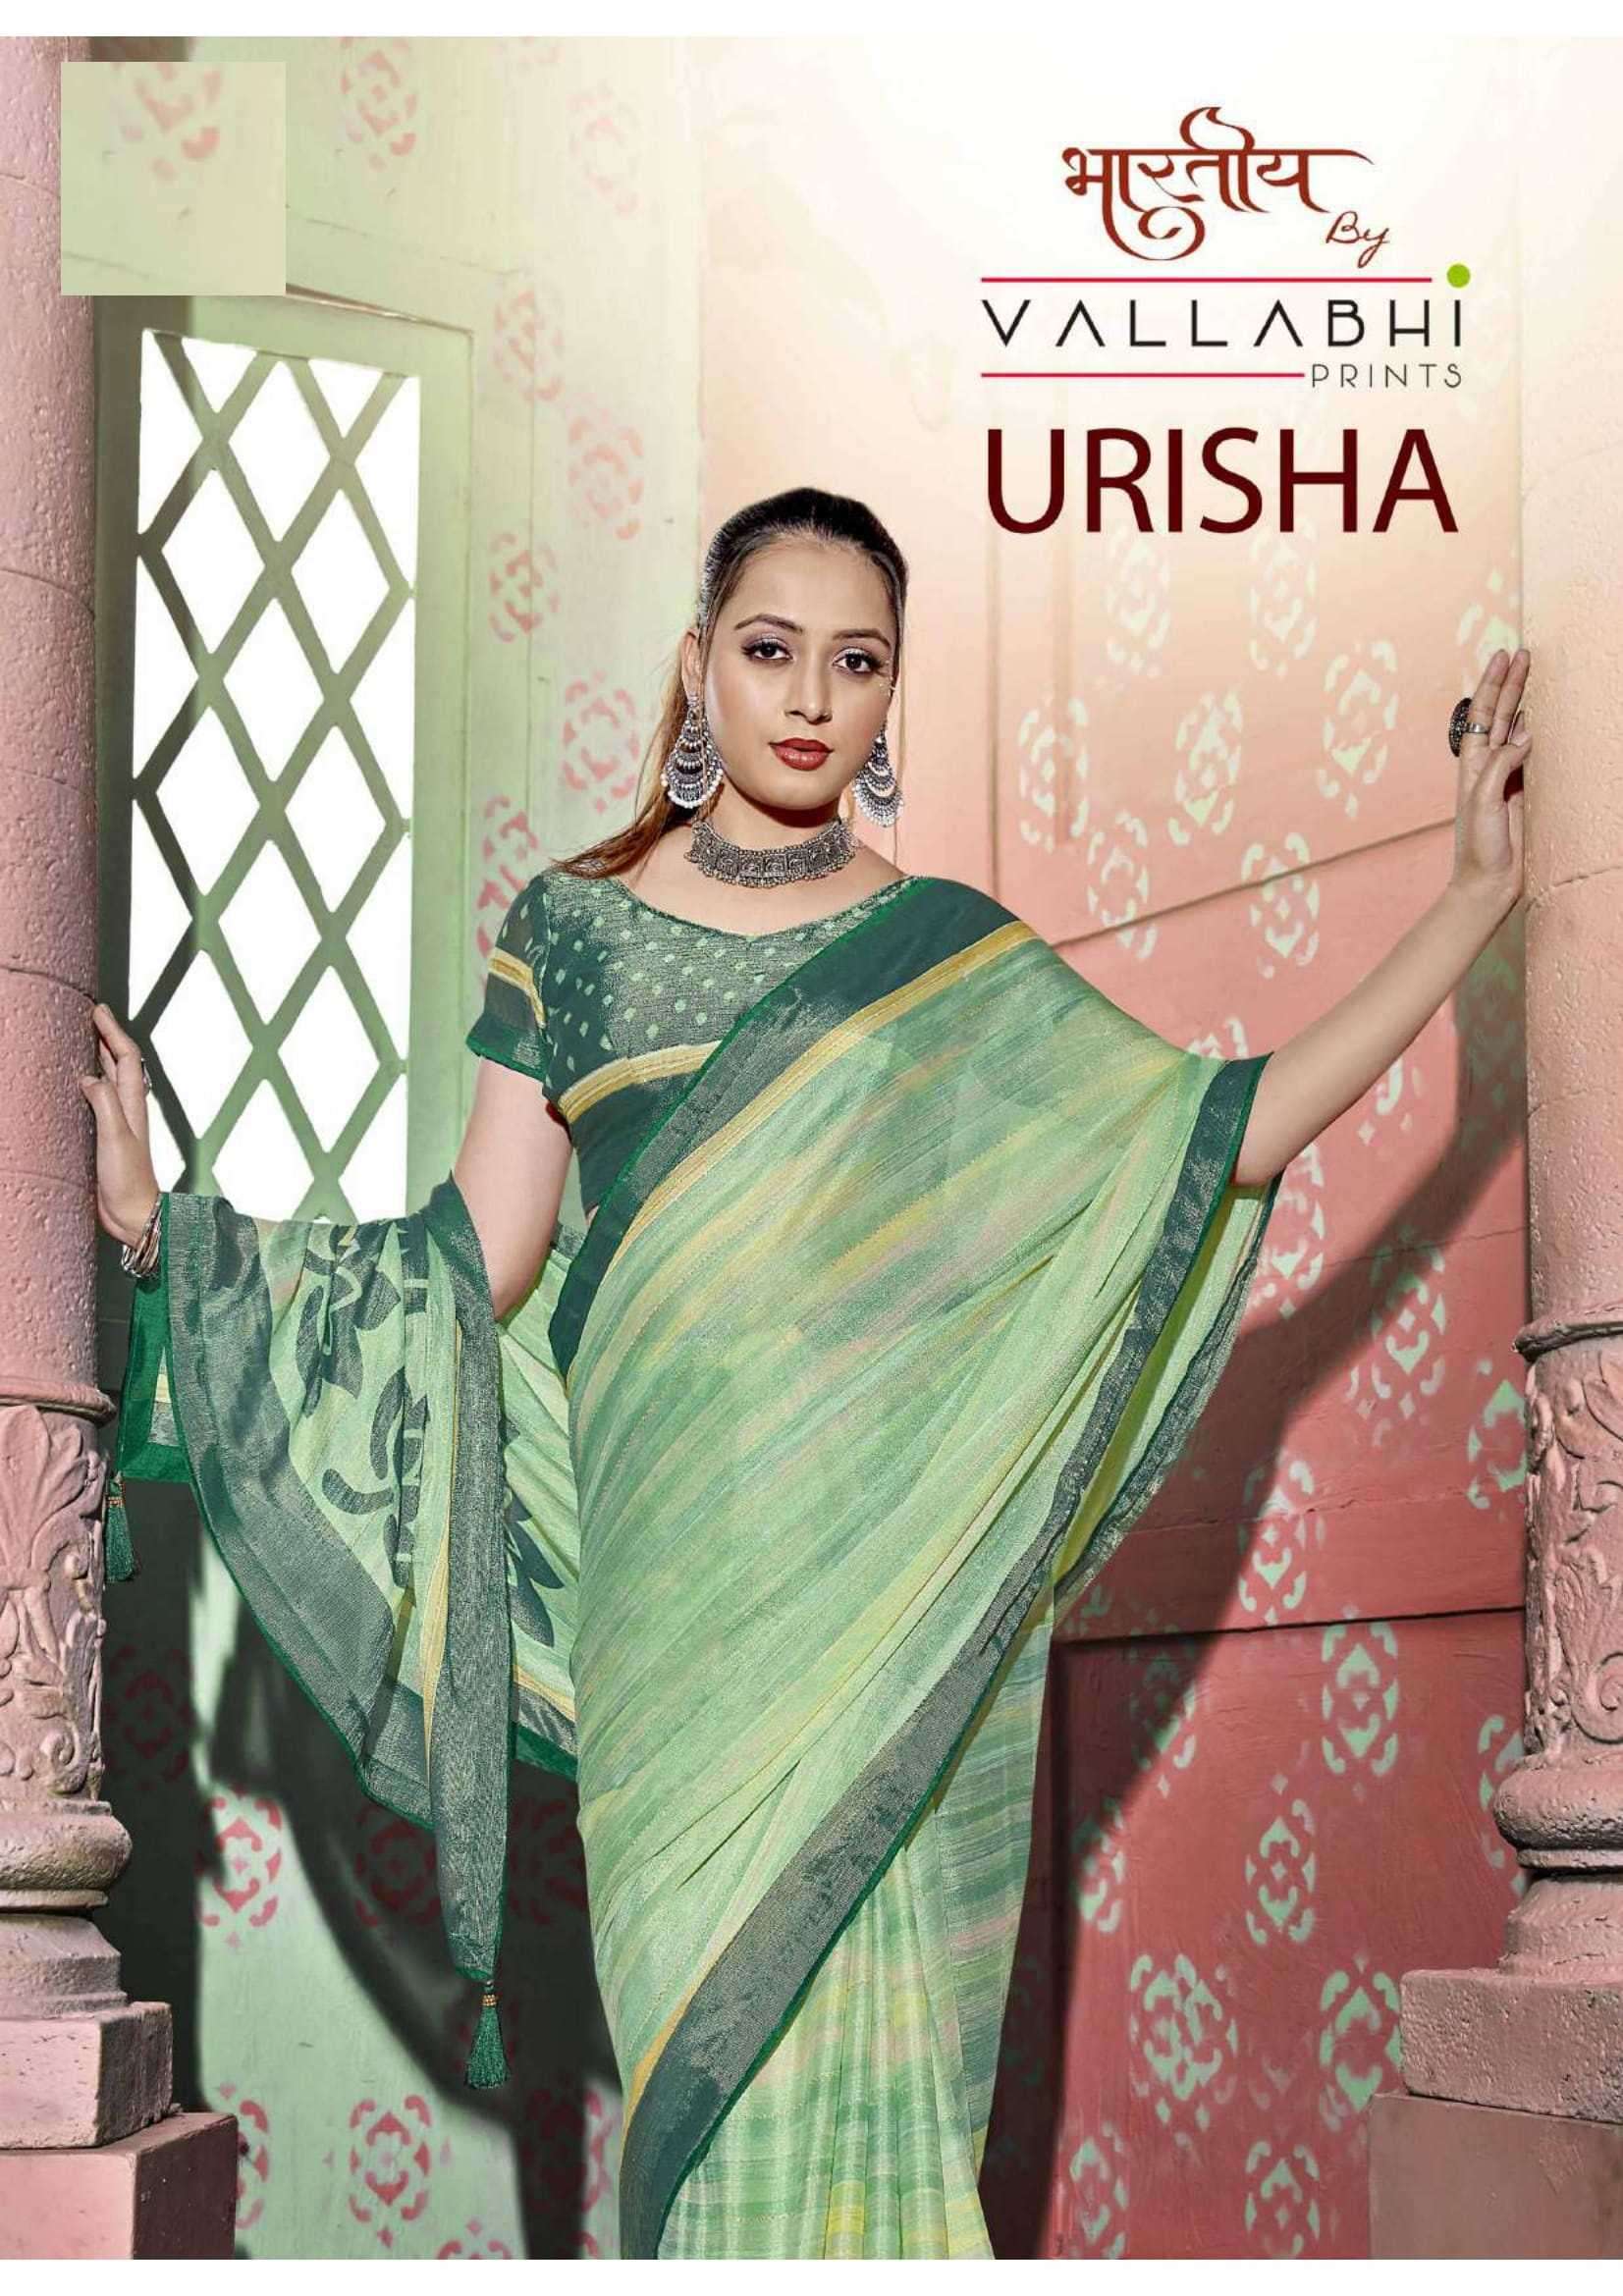 vallabhi prints urisha series 28491-28496 brasso saree